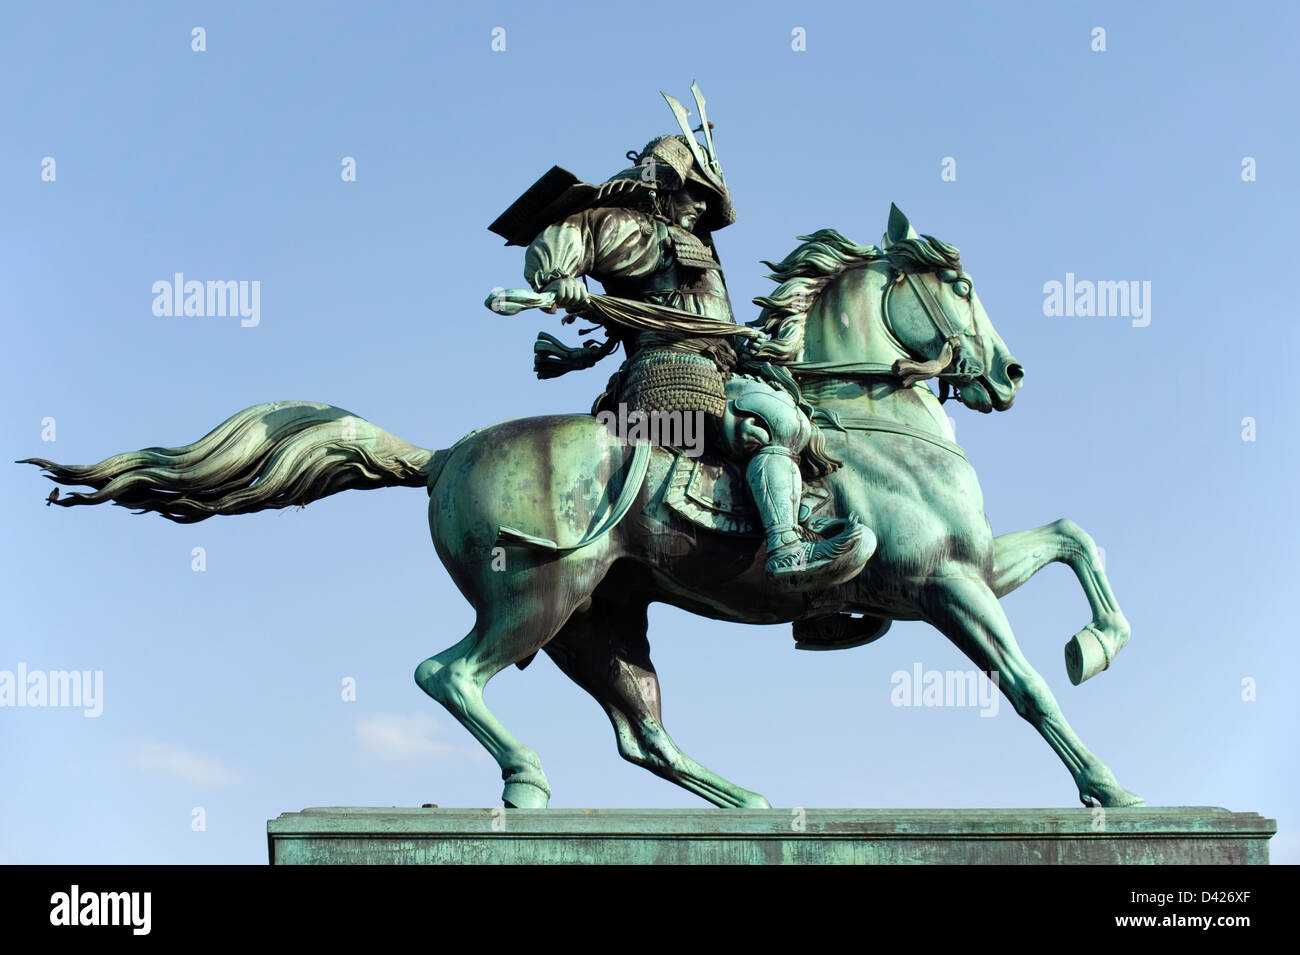 Statua di bronzo di Kusunoki Masashige, xiv secolo Samurai Warrior, a cavallo nel Parco Kokyogaien vicino al palazzo imperiale di Tokyo. Foto Stock